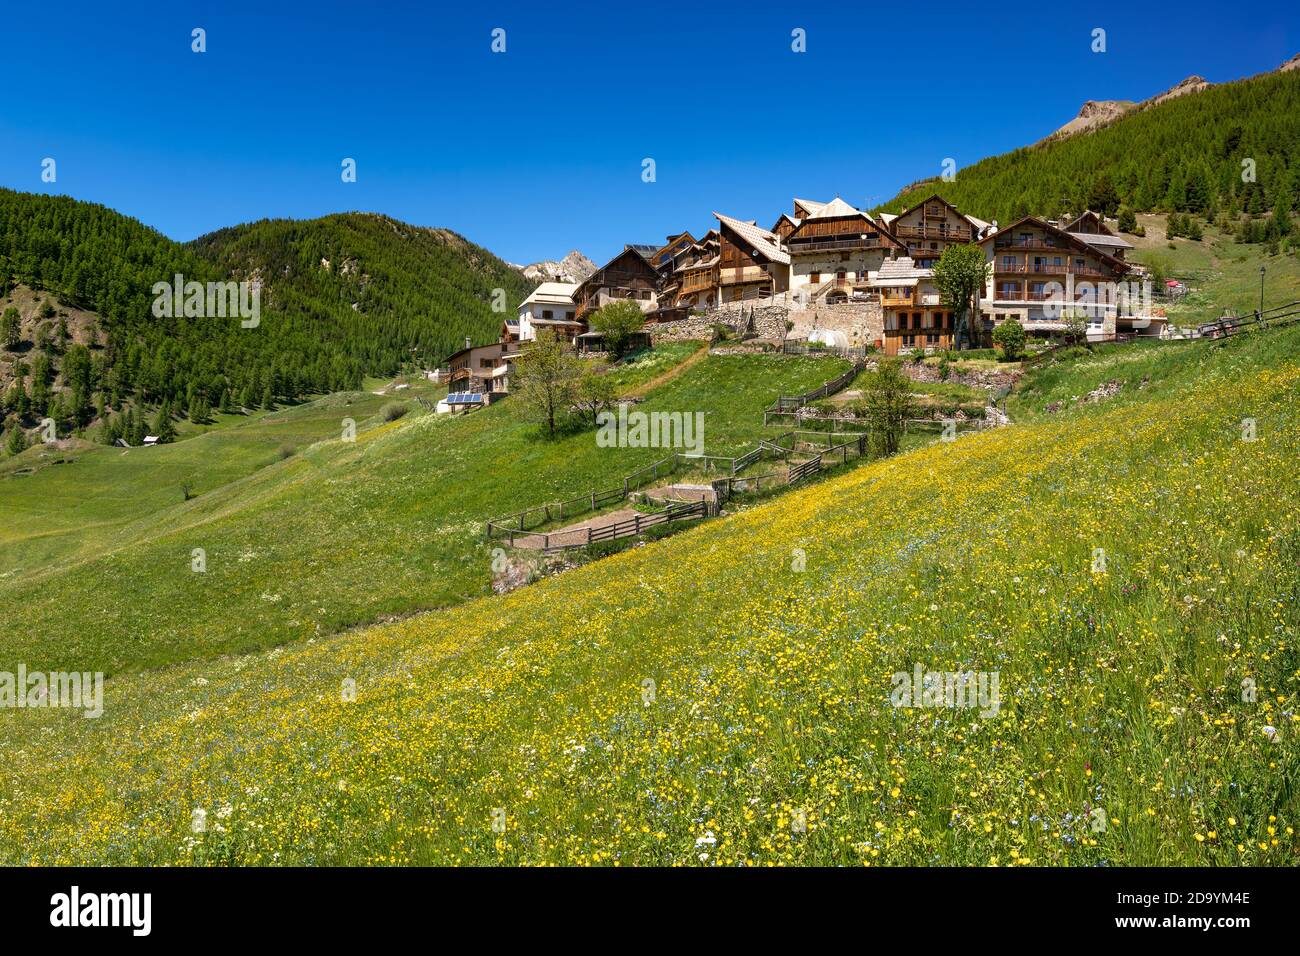 Le village de Souliers en été dans le Parc naturel régional de Queyras. Hautes-Alpes (05), Alpes européennes, France Banque D'Images